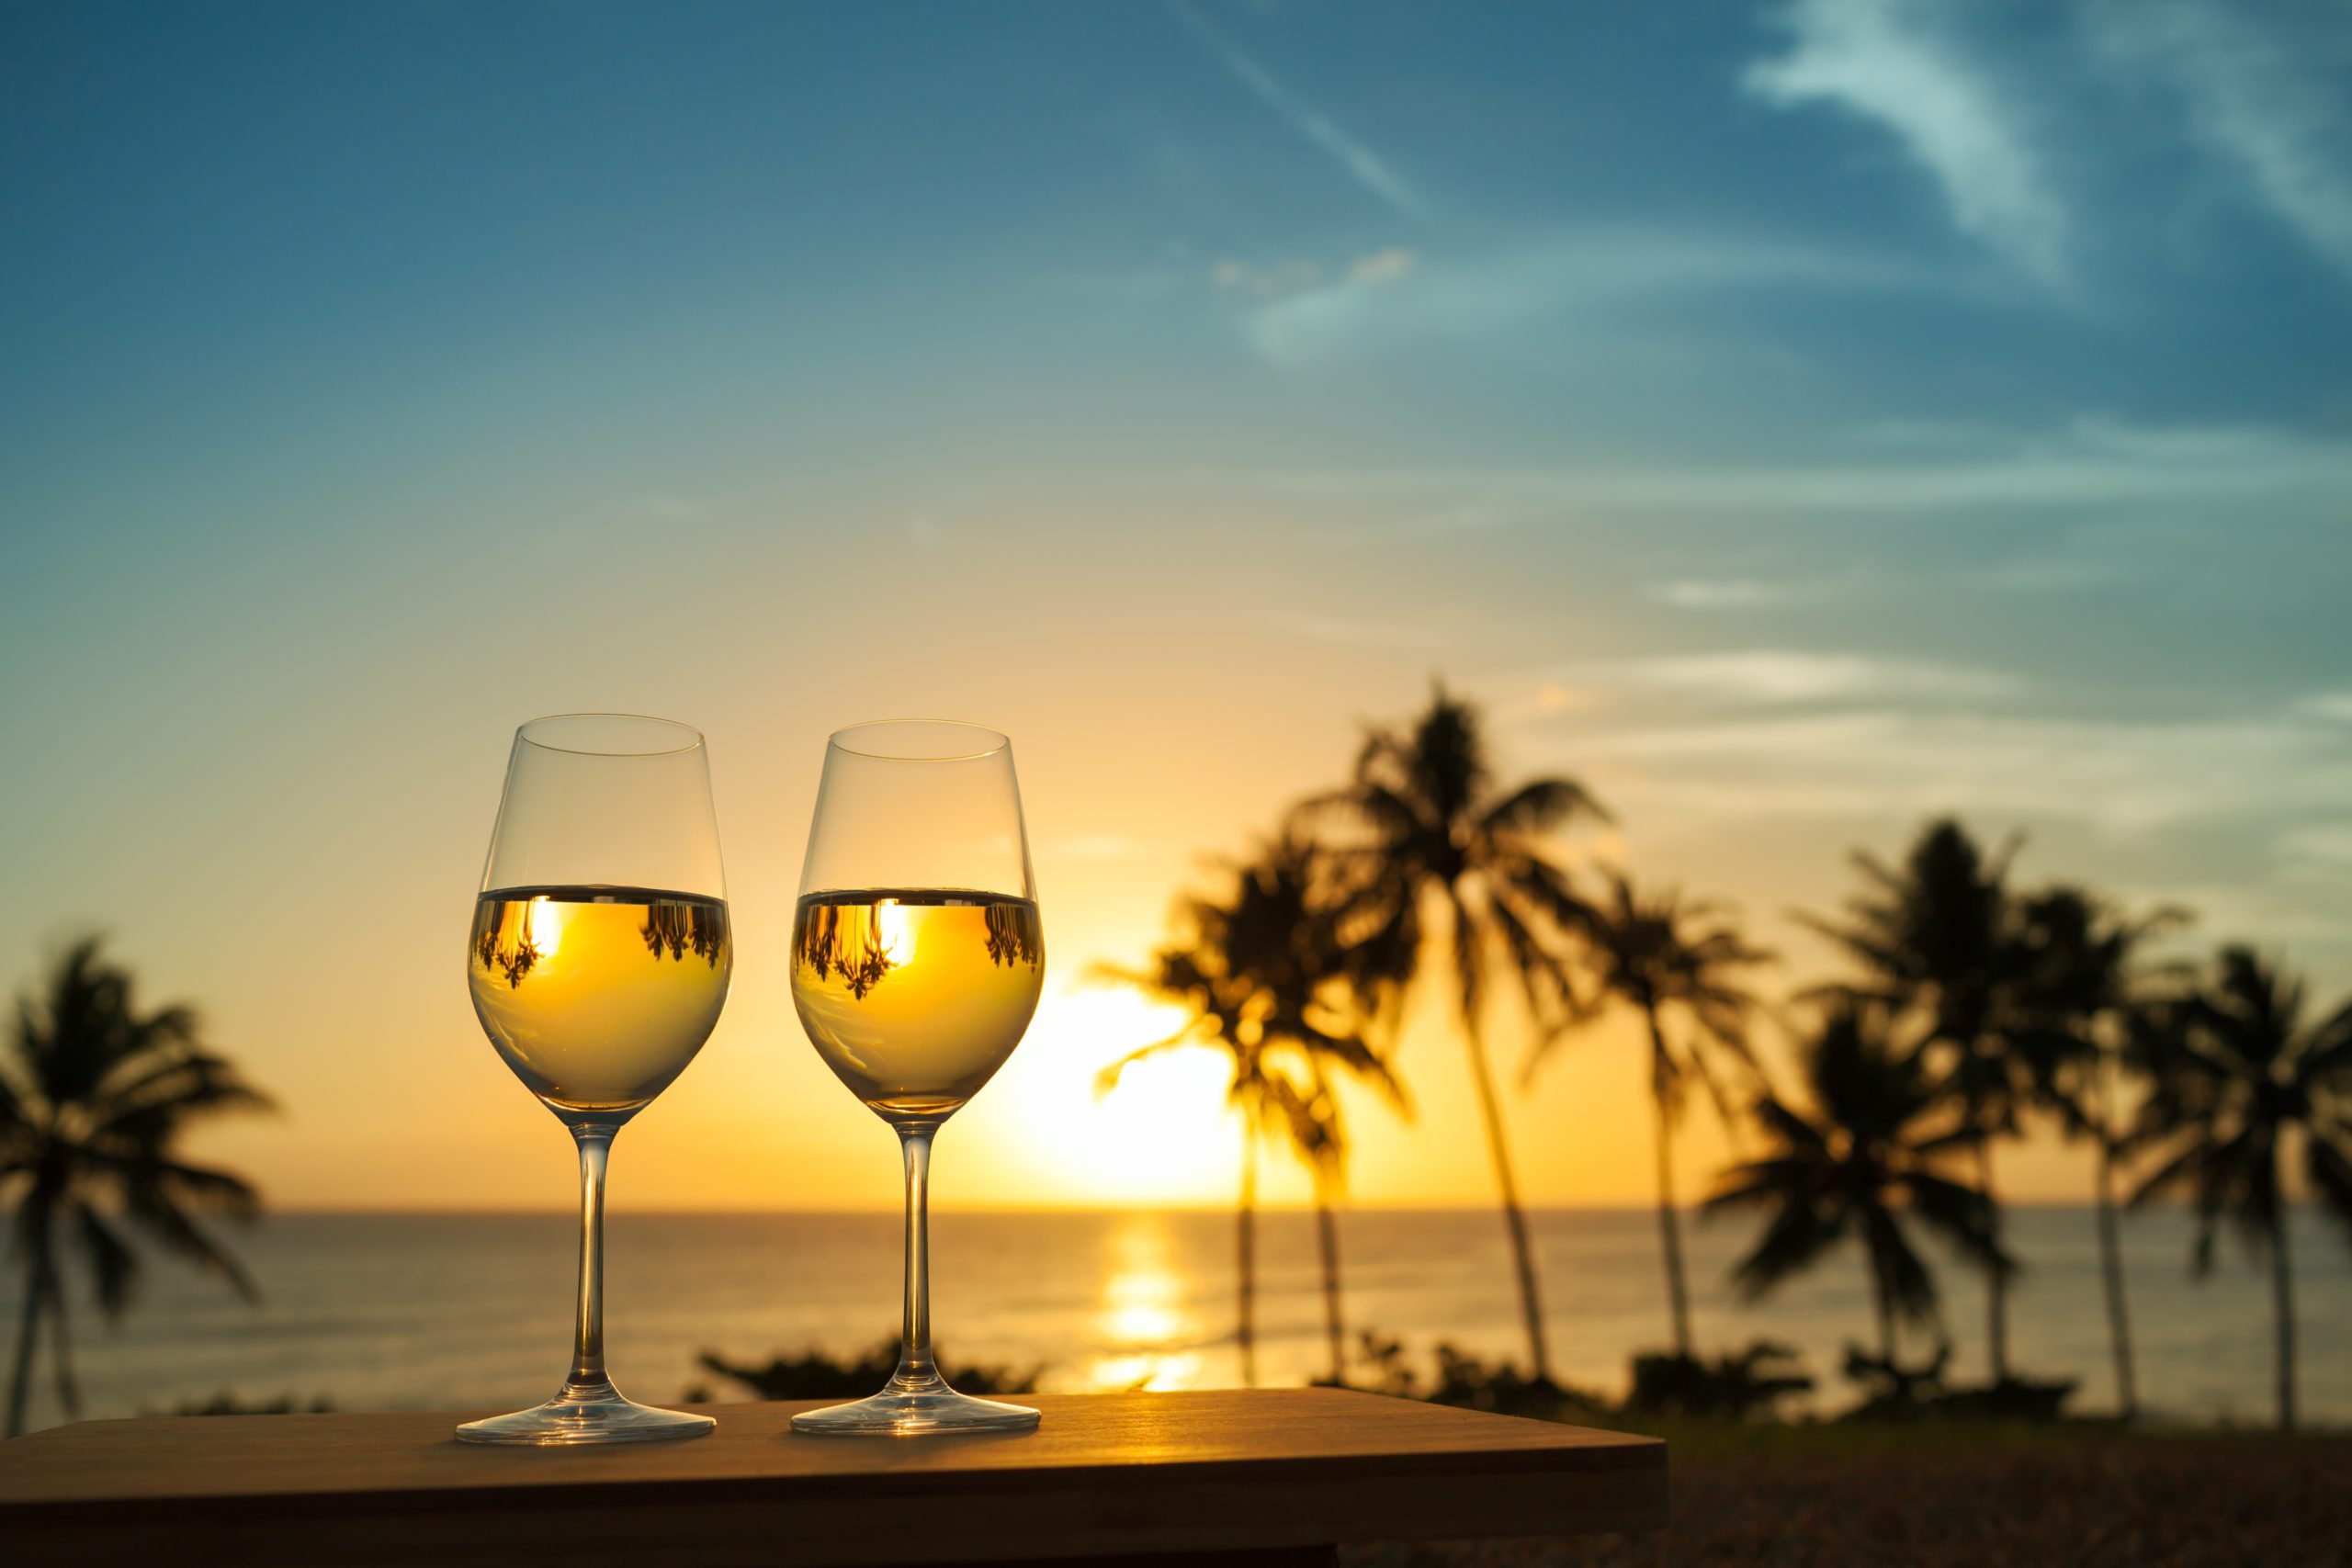 Copas de vino con atardecer de fondo en una playa